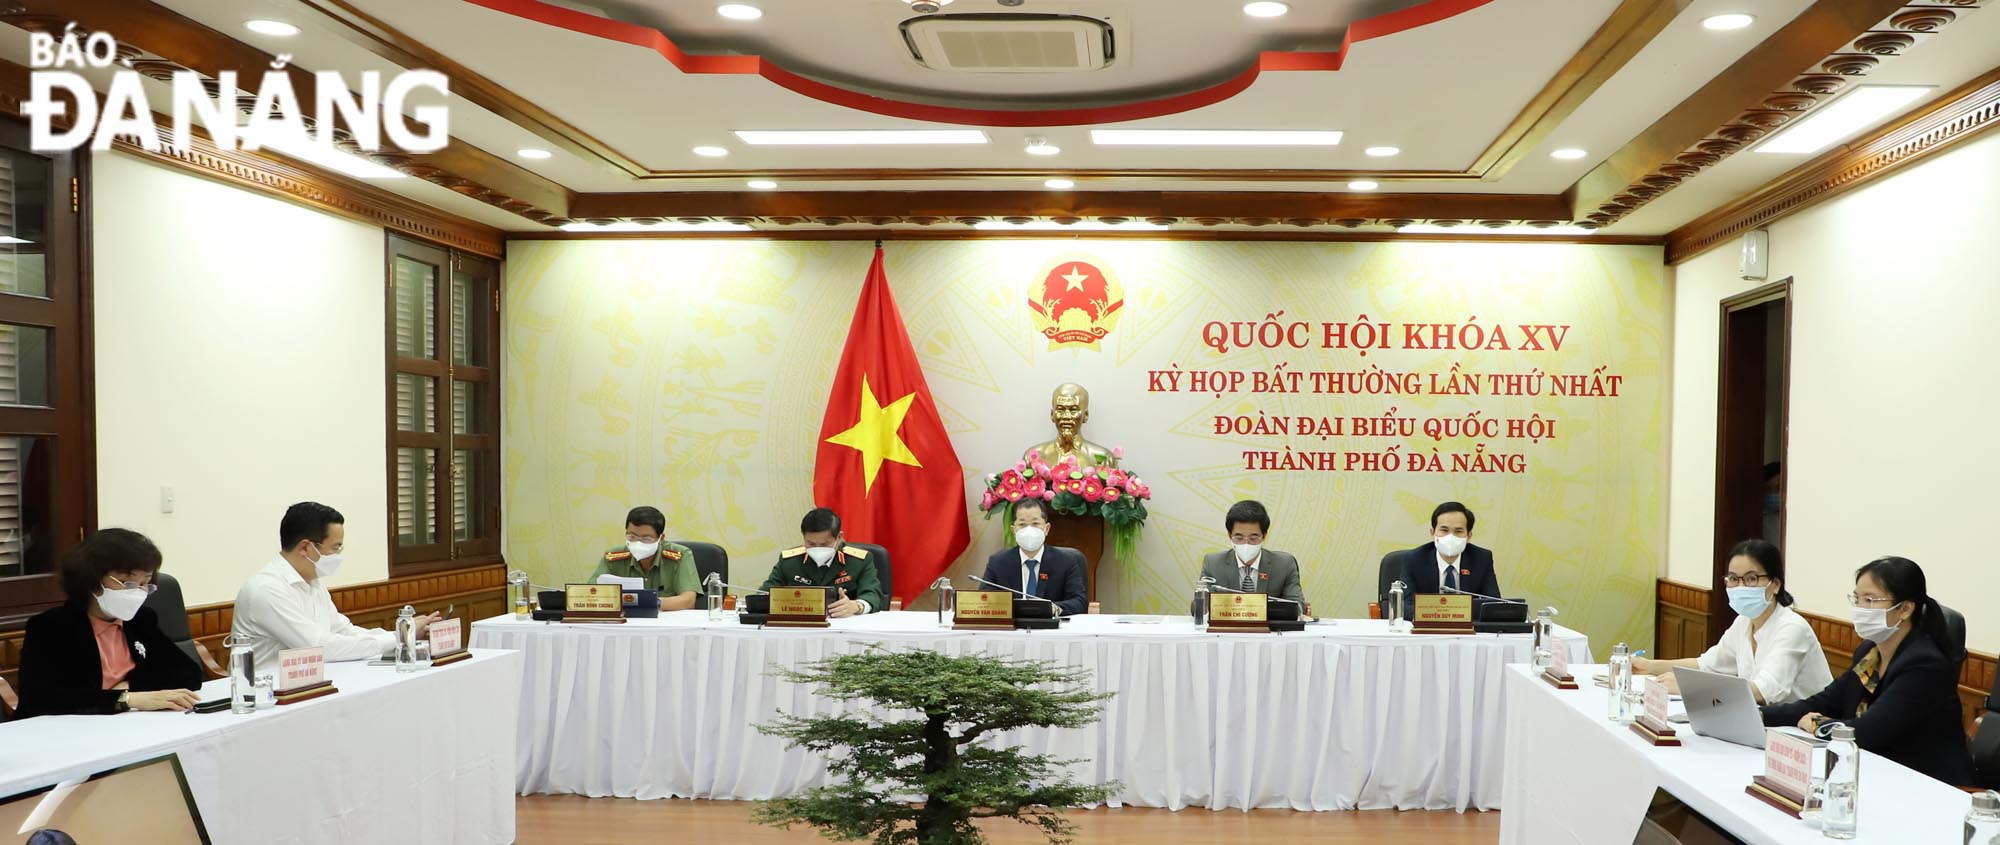 Bí thư Thành ủy Nguyễn Văn Quảng và các đại biểu dự tại điểm cầu thành phố Đà Nẵng. Ảnh: NGỌC PHÚ